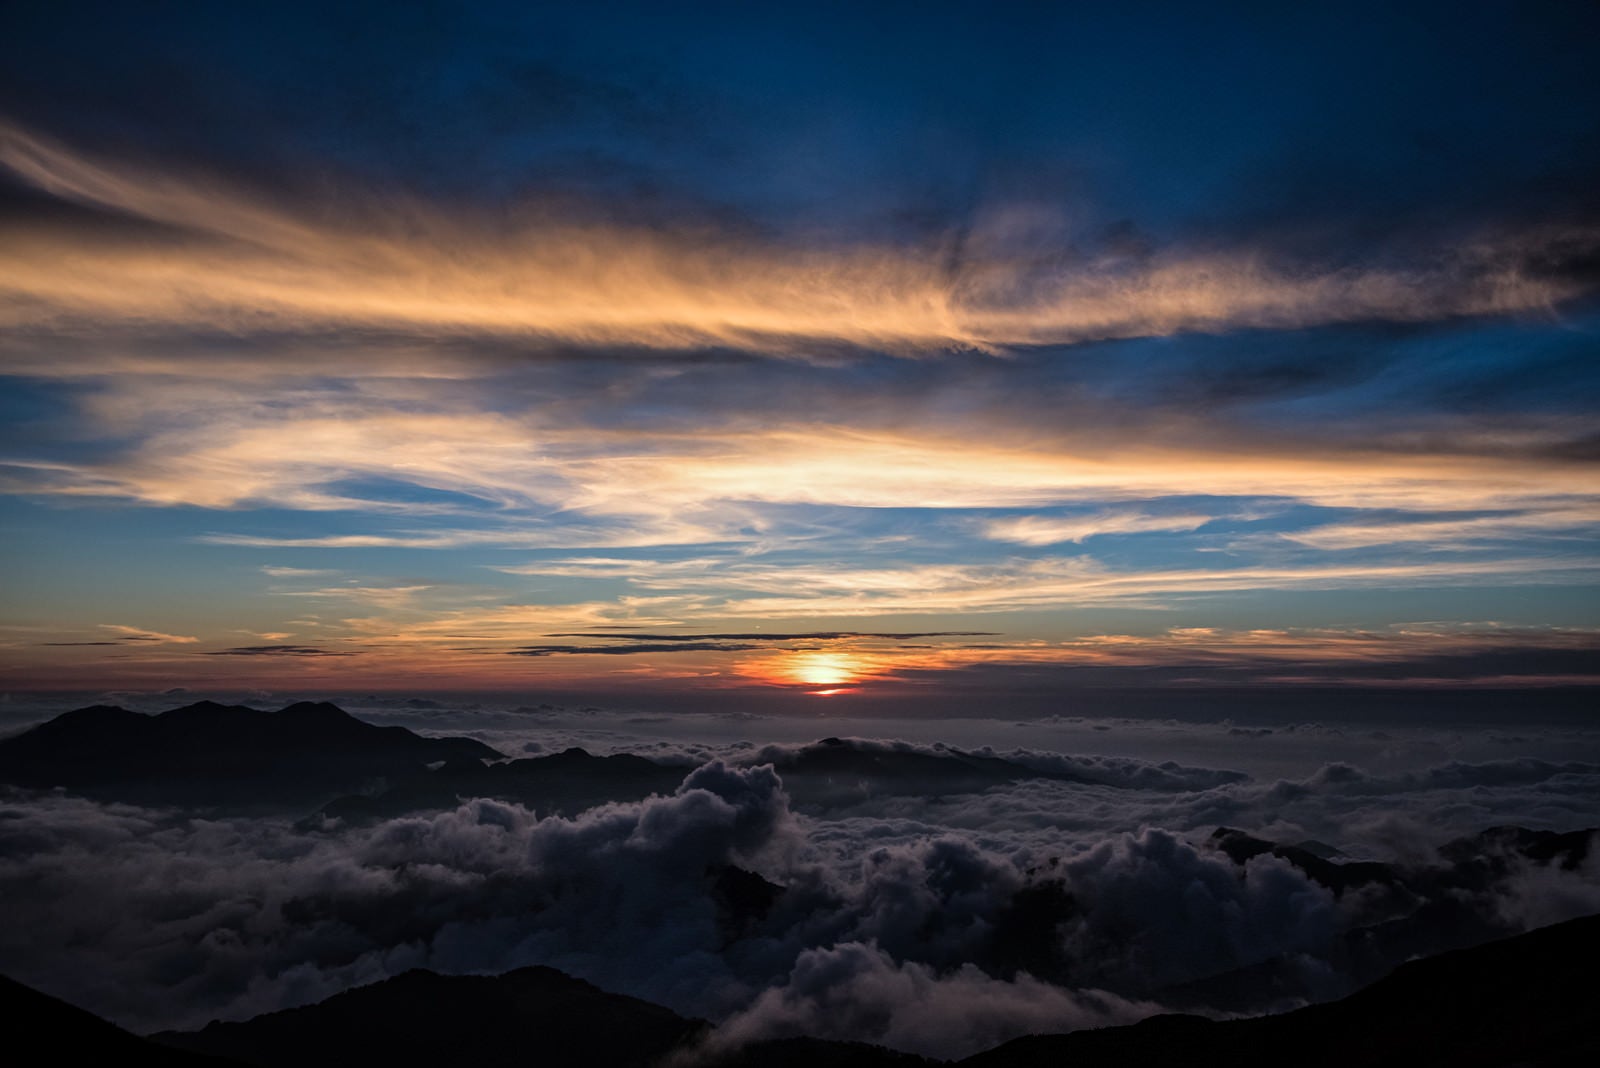 「天狗原から見る夕日の様子」の写真